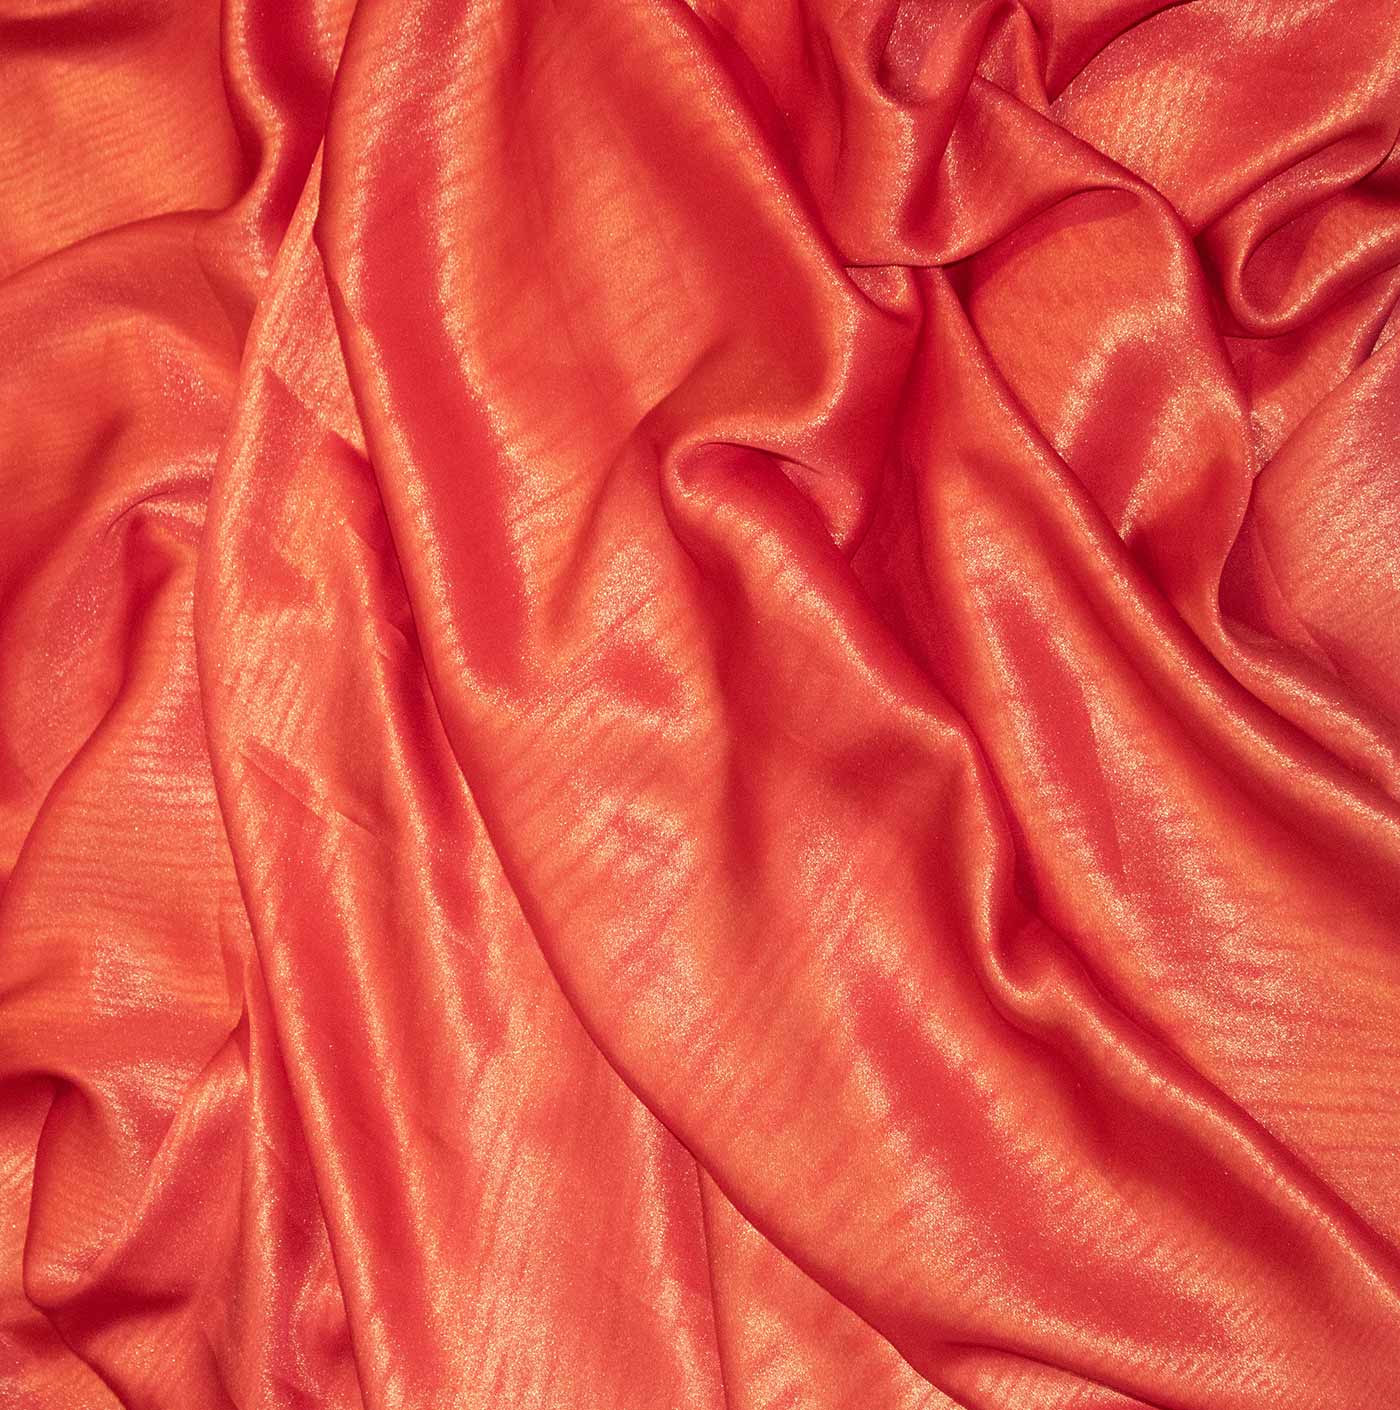 Red Cationic Chiffon Fabric